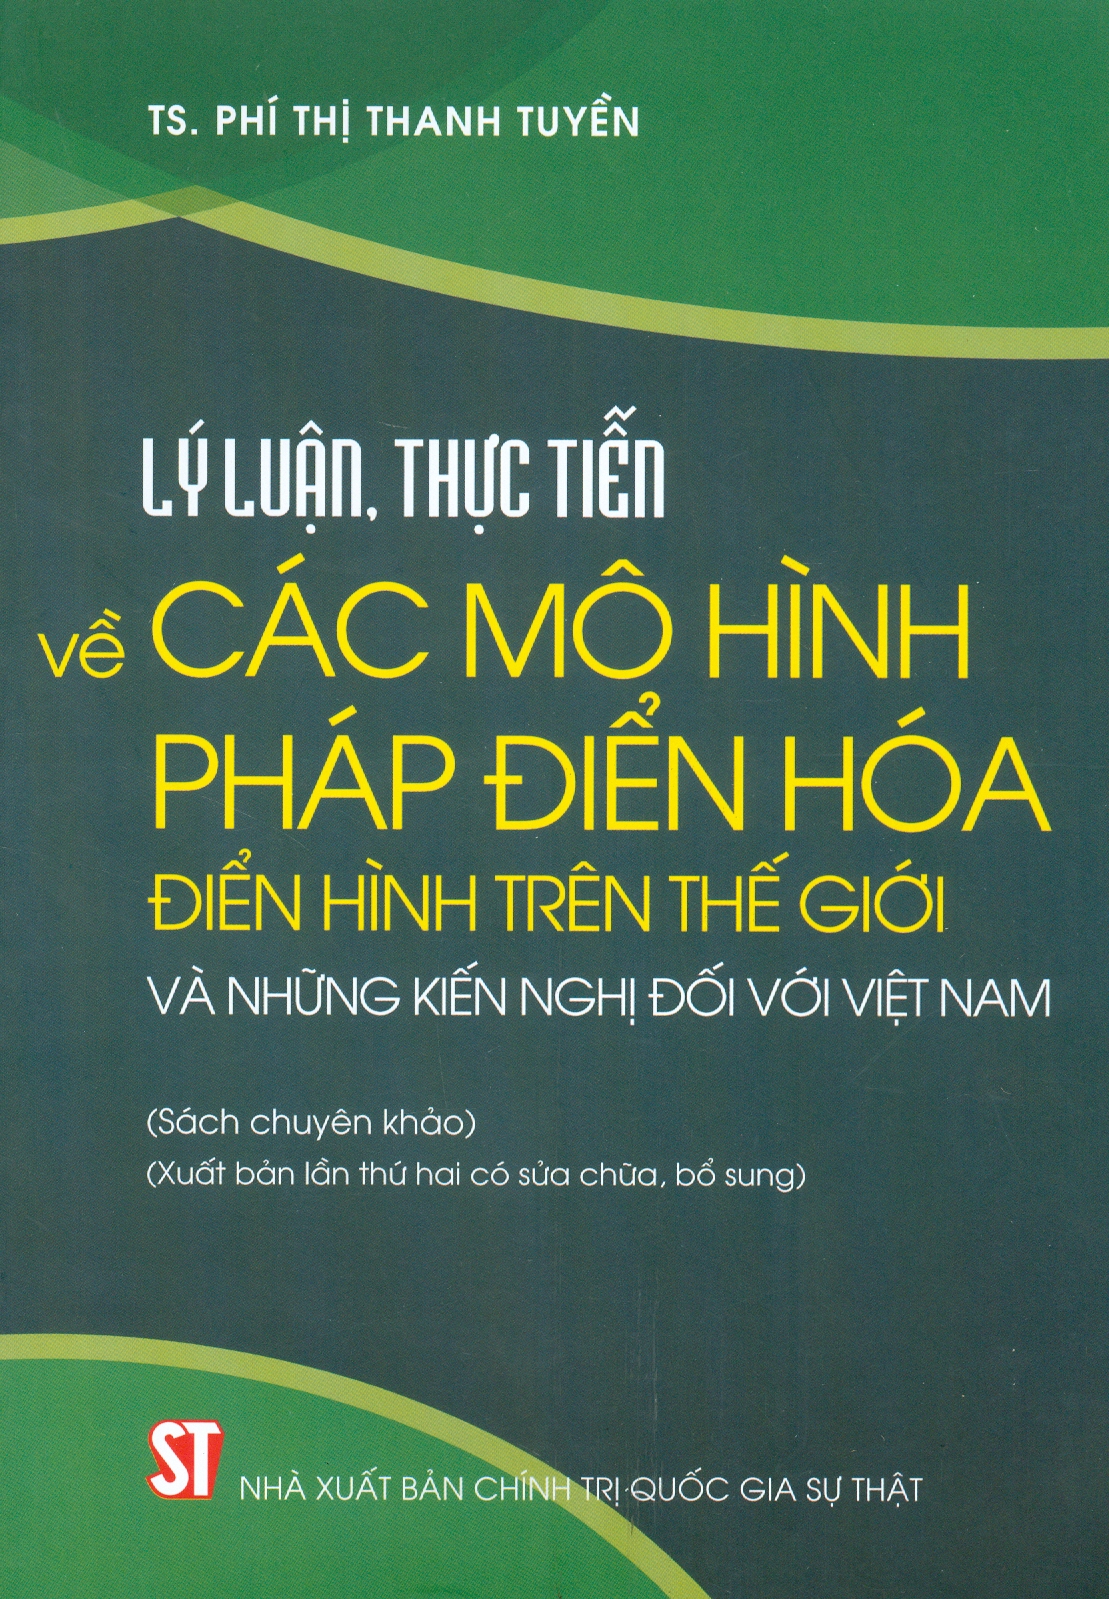 Lý luận, thực tiễn về các mô hình pháp điển hóa điển hình trên thế giới và những kiến nghị đối với Việt Nam (Sách chuyên khảo) (Xuất bản lần thứ hai có sửa chữa, bổ sung)